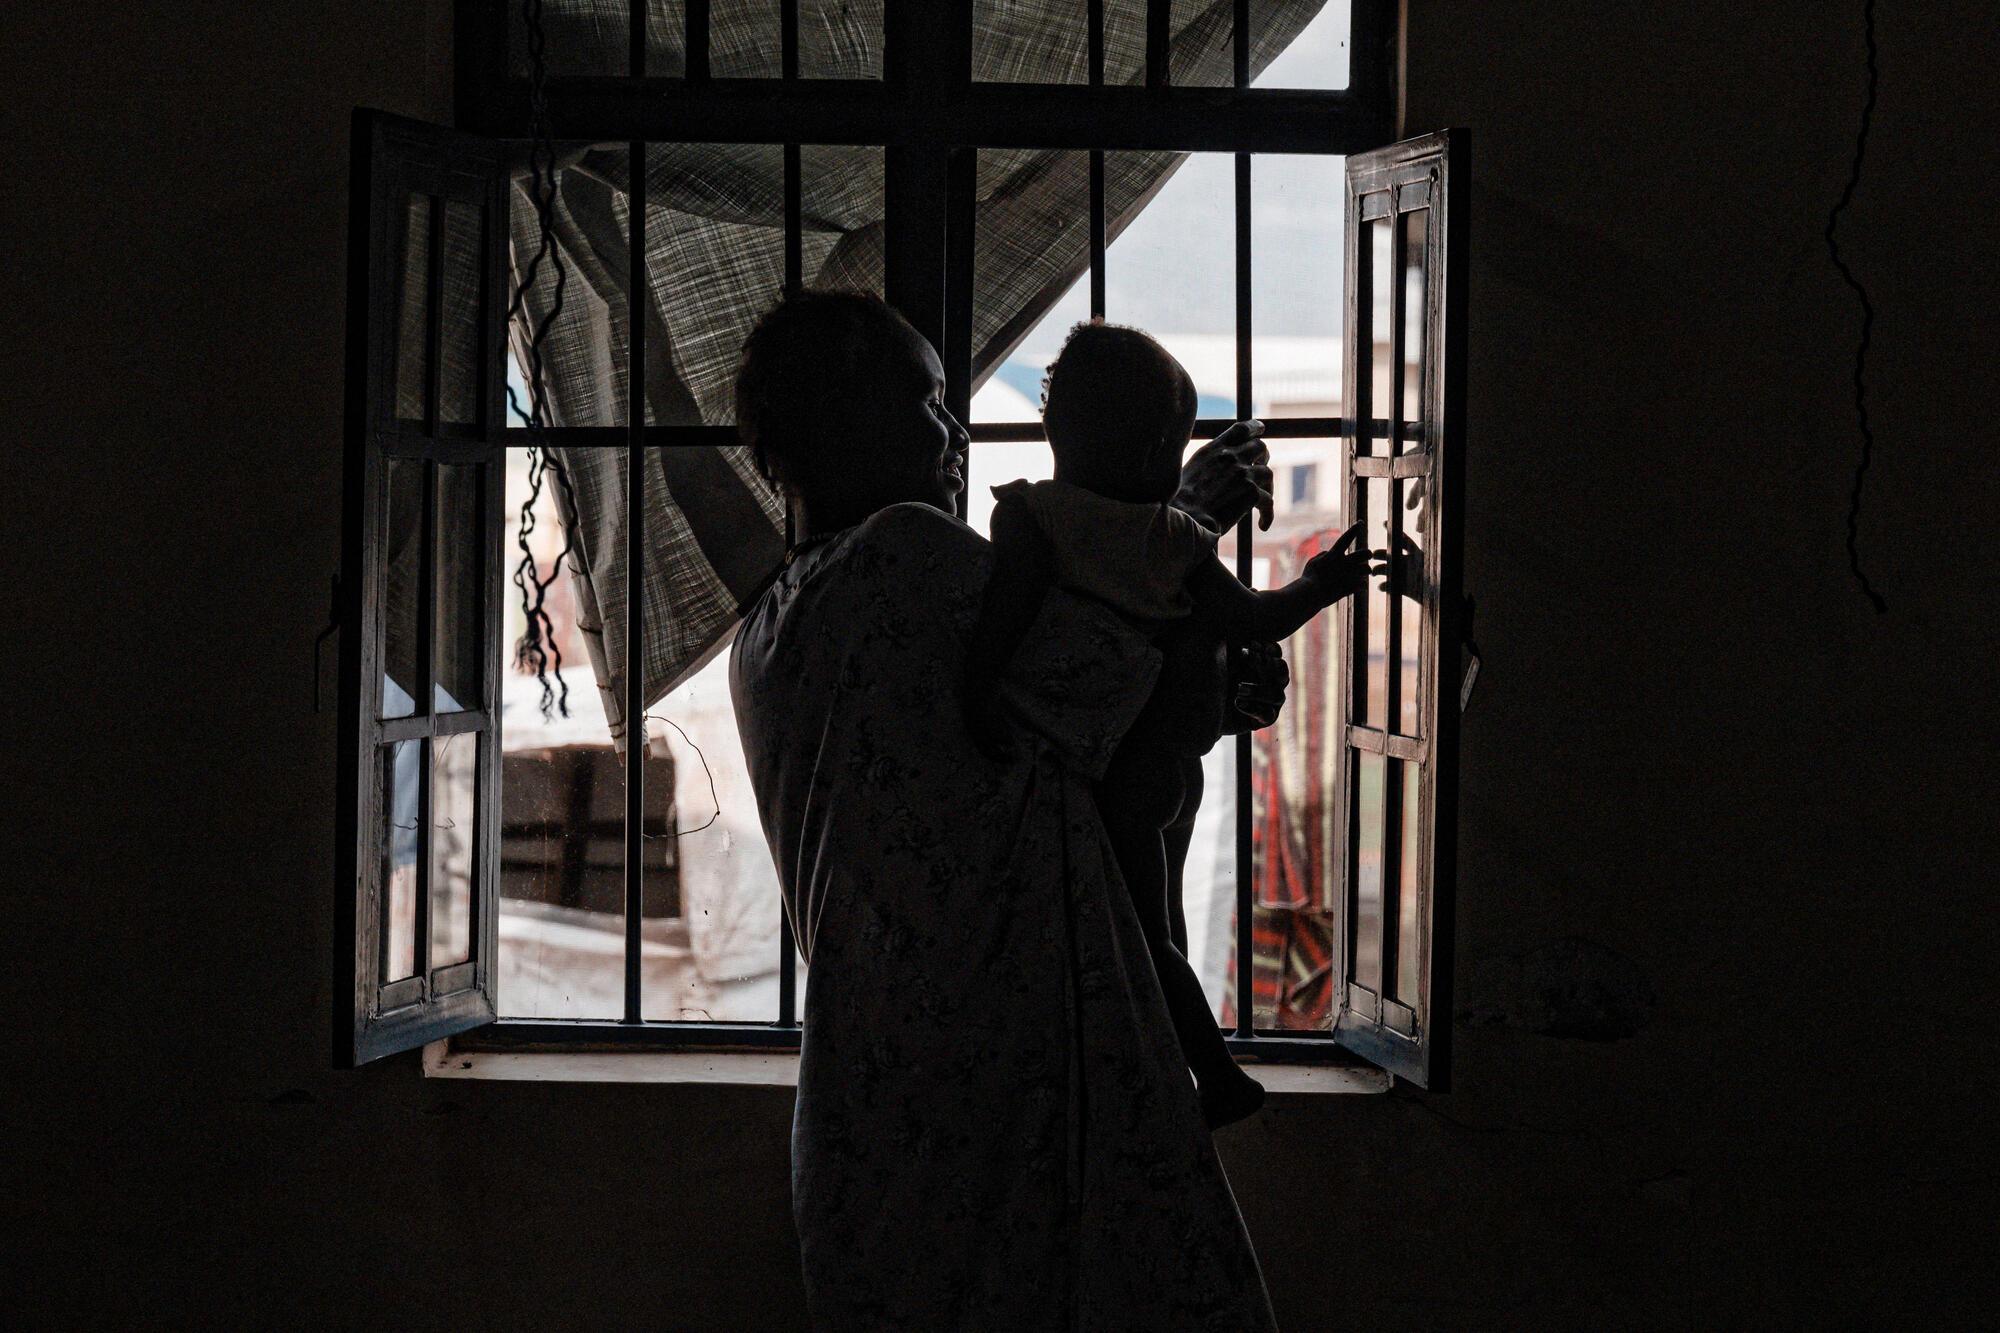 Jouer avec les réflexions. Nyaluh Majith avec son fils Anok Deng, hôpital Ameth Bek, Abyei. © Sean Sutton/Panos Pictures